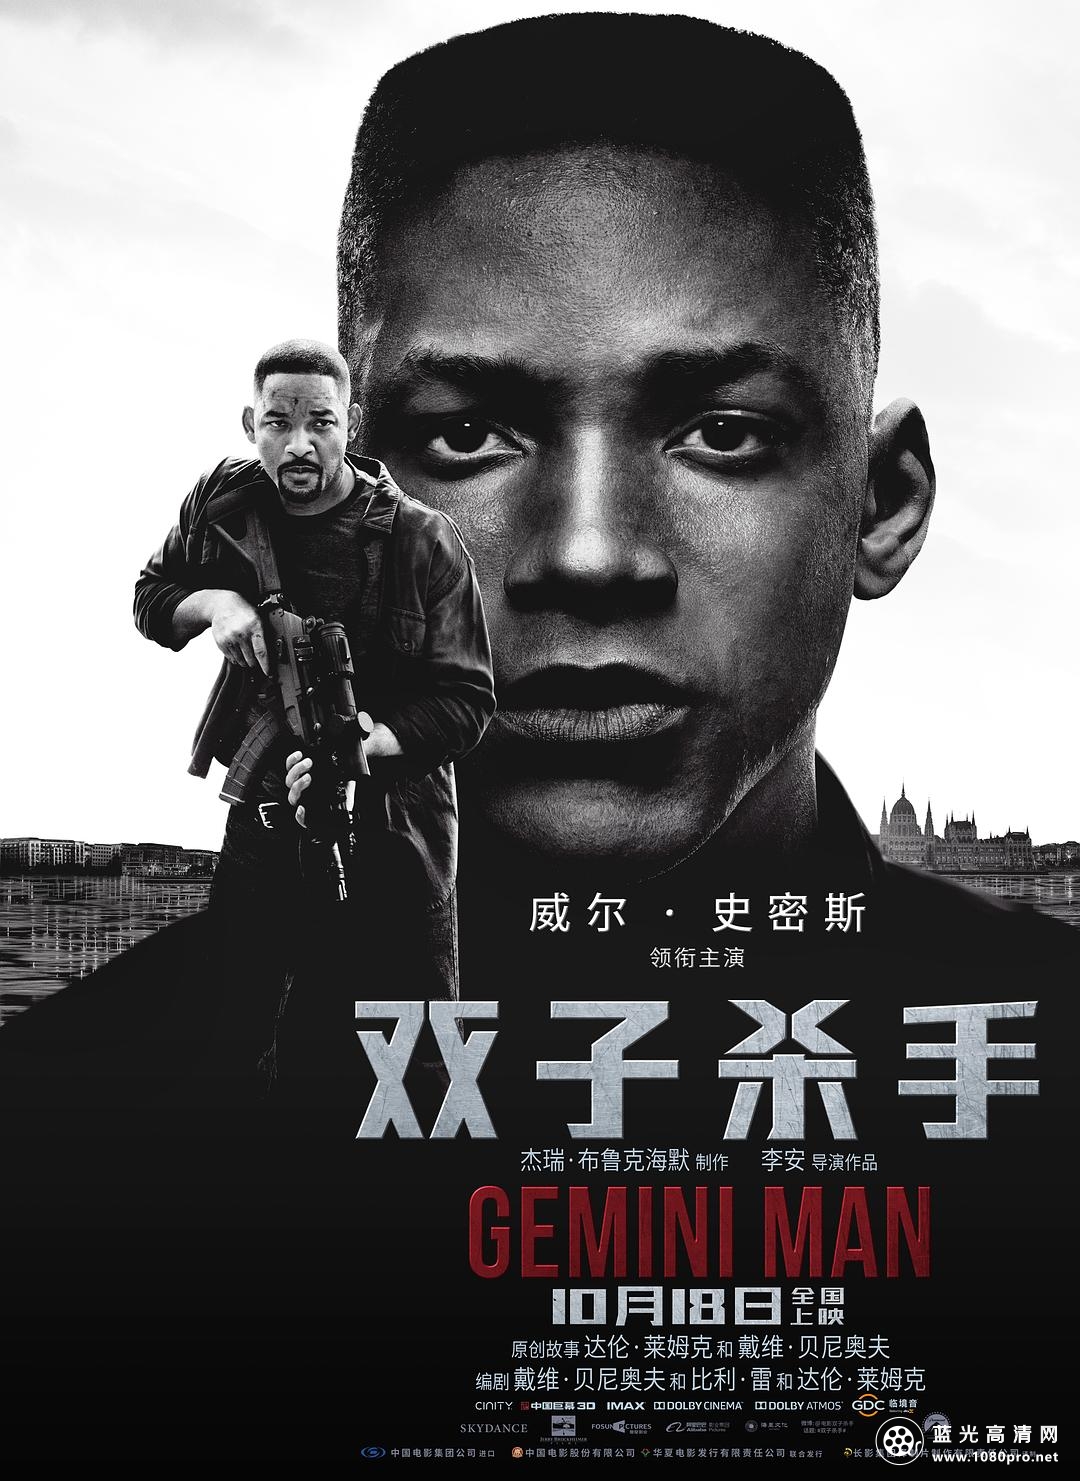 双子杀手/双子任务:叠影危机 Gemini.Man.2019.720p.BluRay.x264-SPARKS 4.39GB